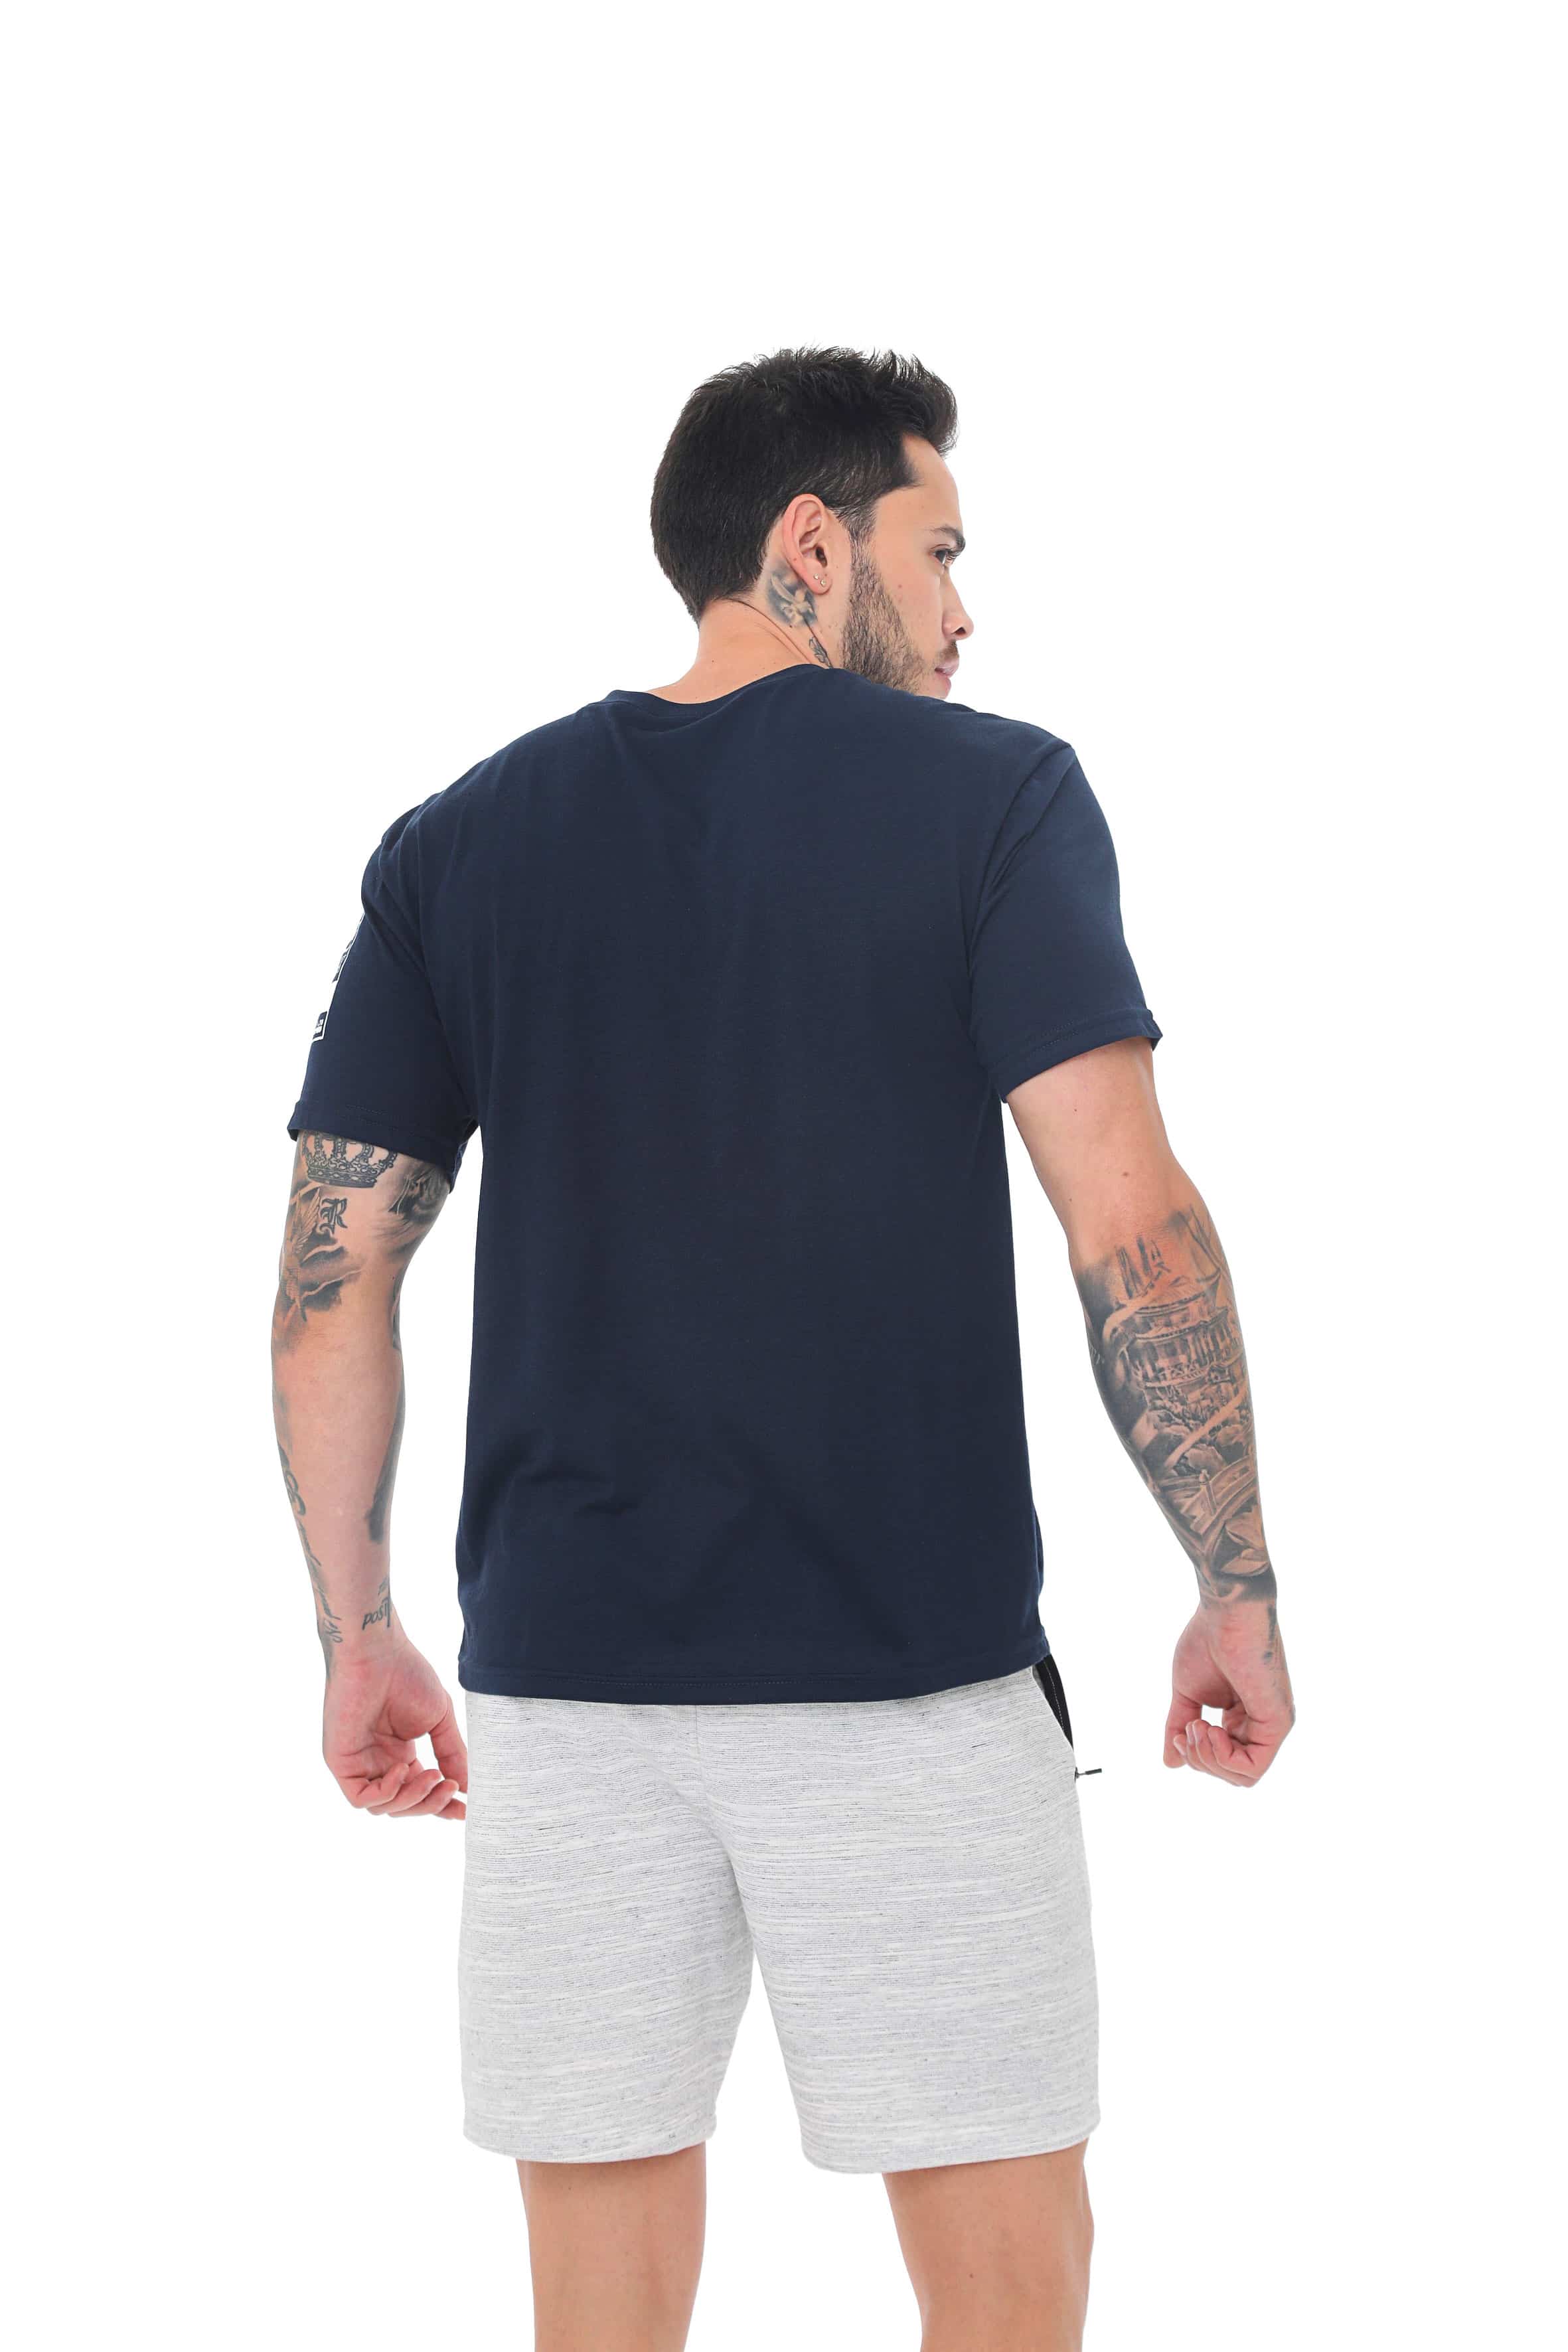 Camiseta azul oscuro cuello redondo, con estampado frontal y en manga corta para hombre